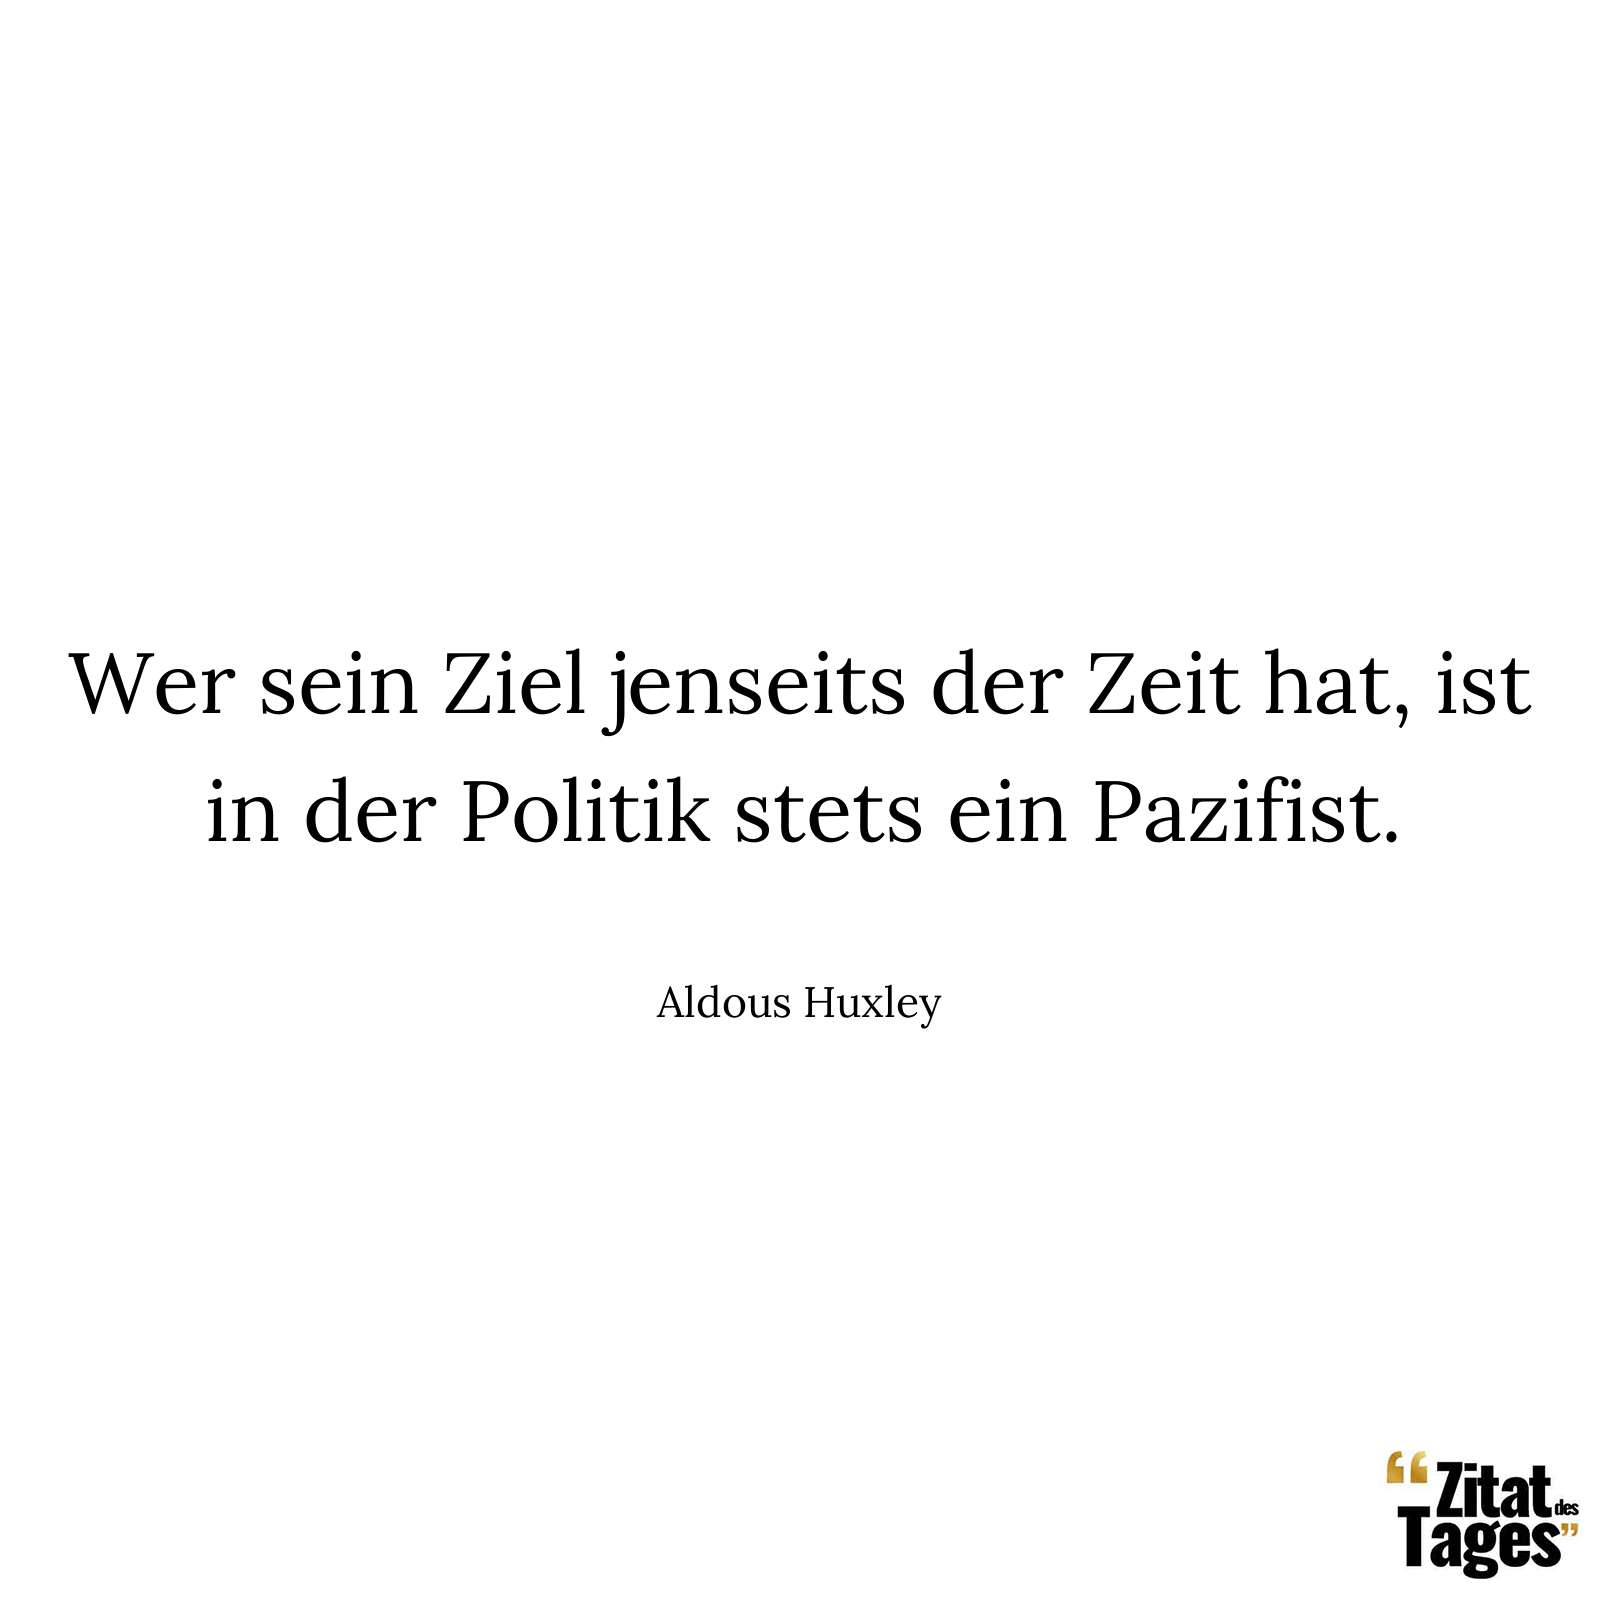 Wer sein Ziel jenseits der Zeit hat, ist in der Politik stets ein Pazifist. - Aldous Huxley